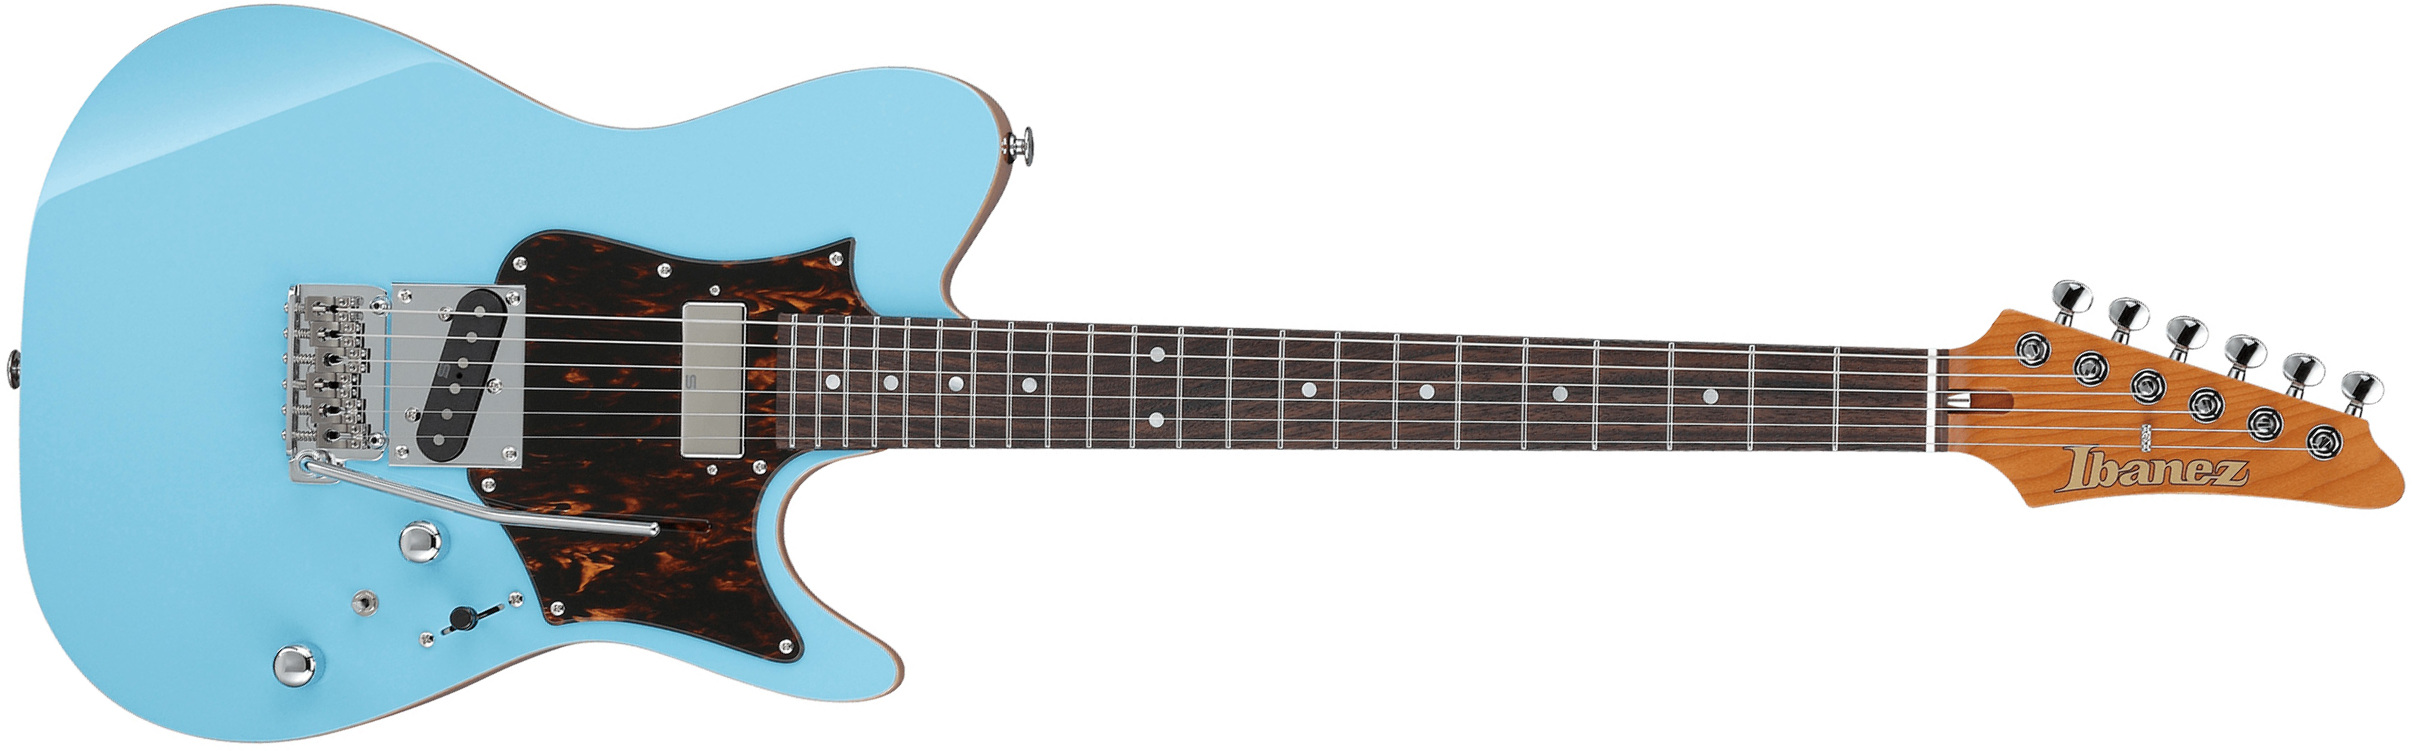 Ibanez Tom Quayle Tqms1 Ctb Jap Signature Smh Trem Rw - Celeste Blue - Televorm elektrische gitaar - Main picture